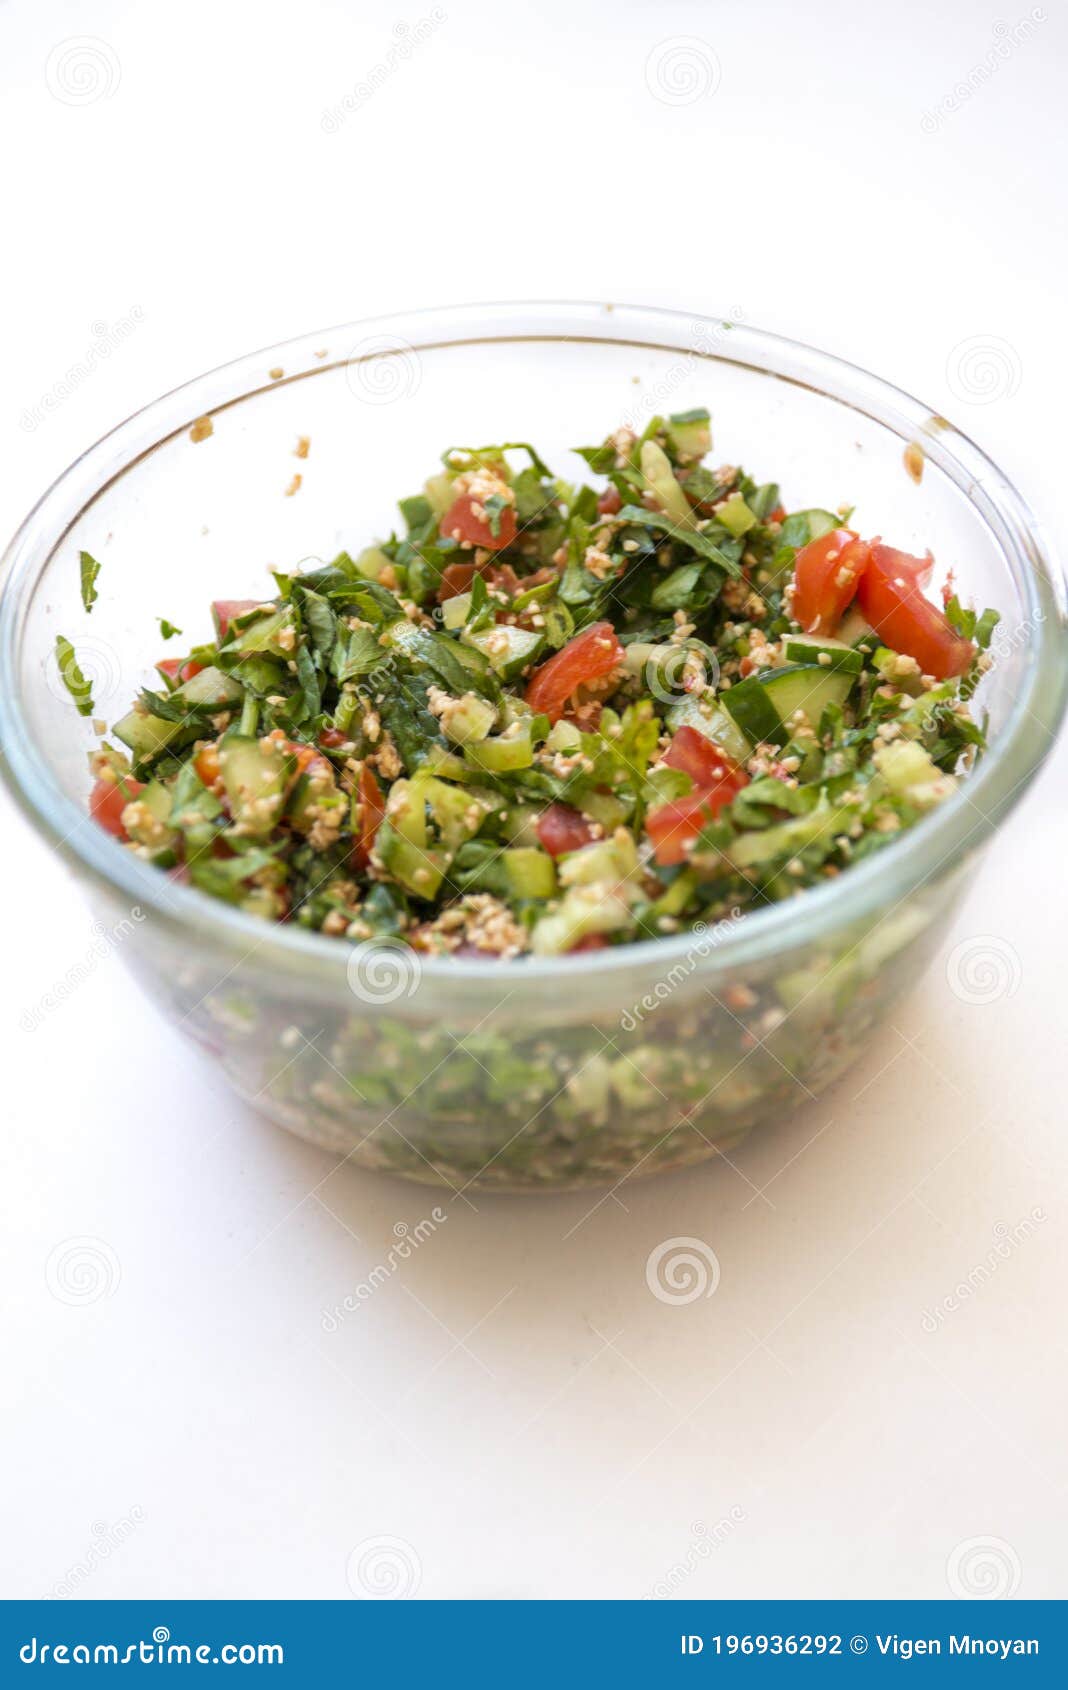 tasty salad of middle eastern cuisine tabule